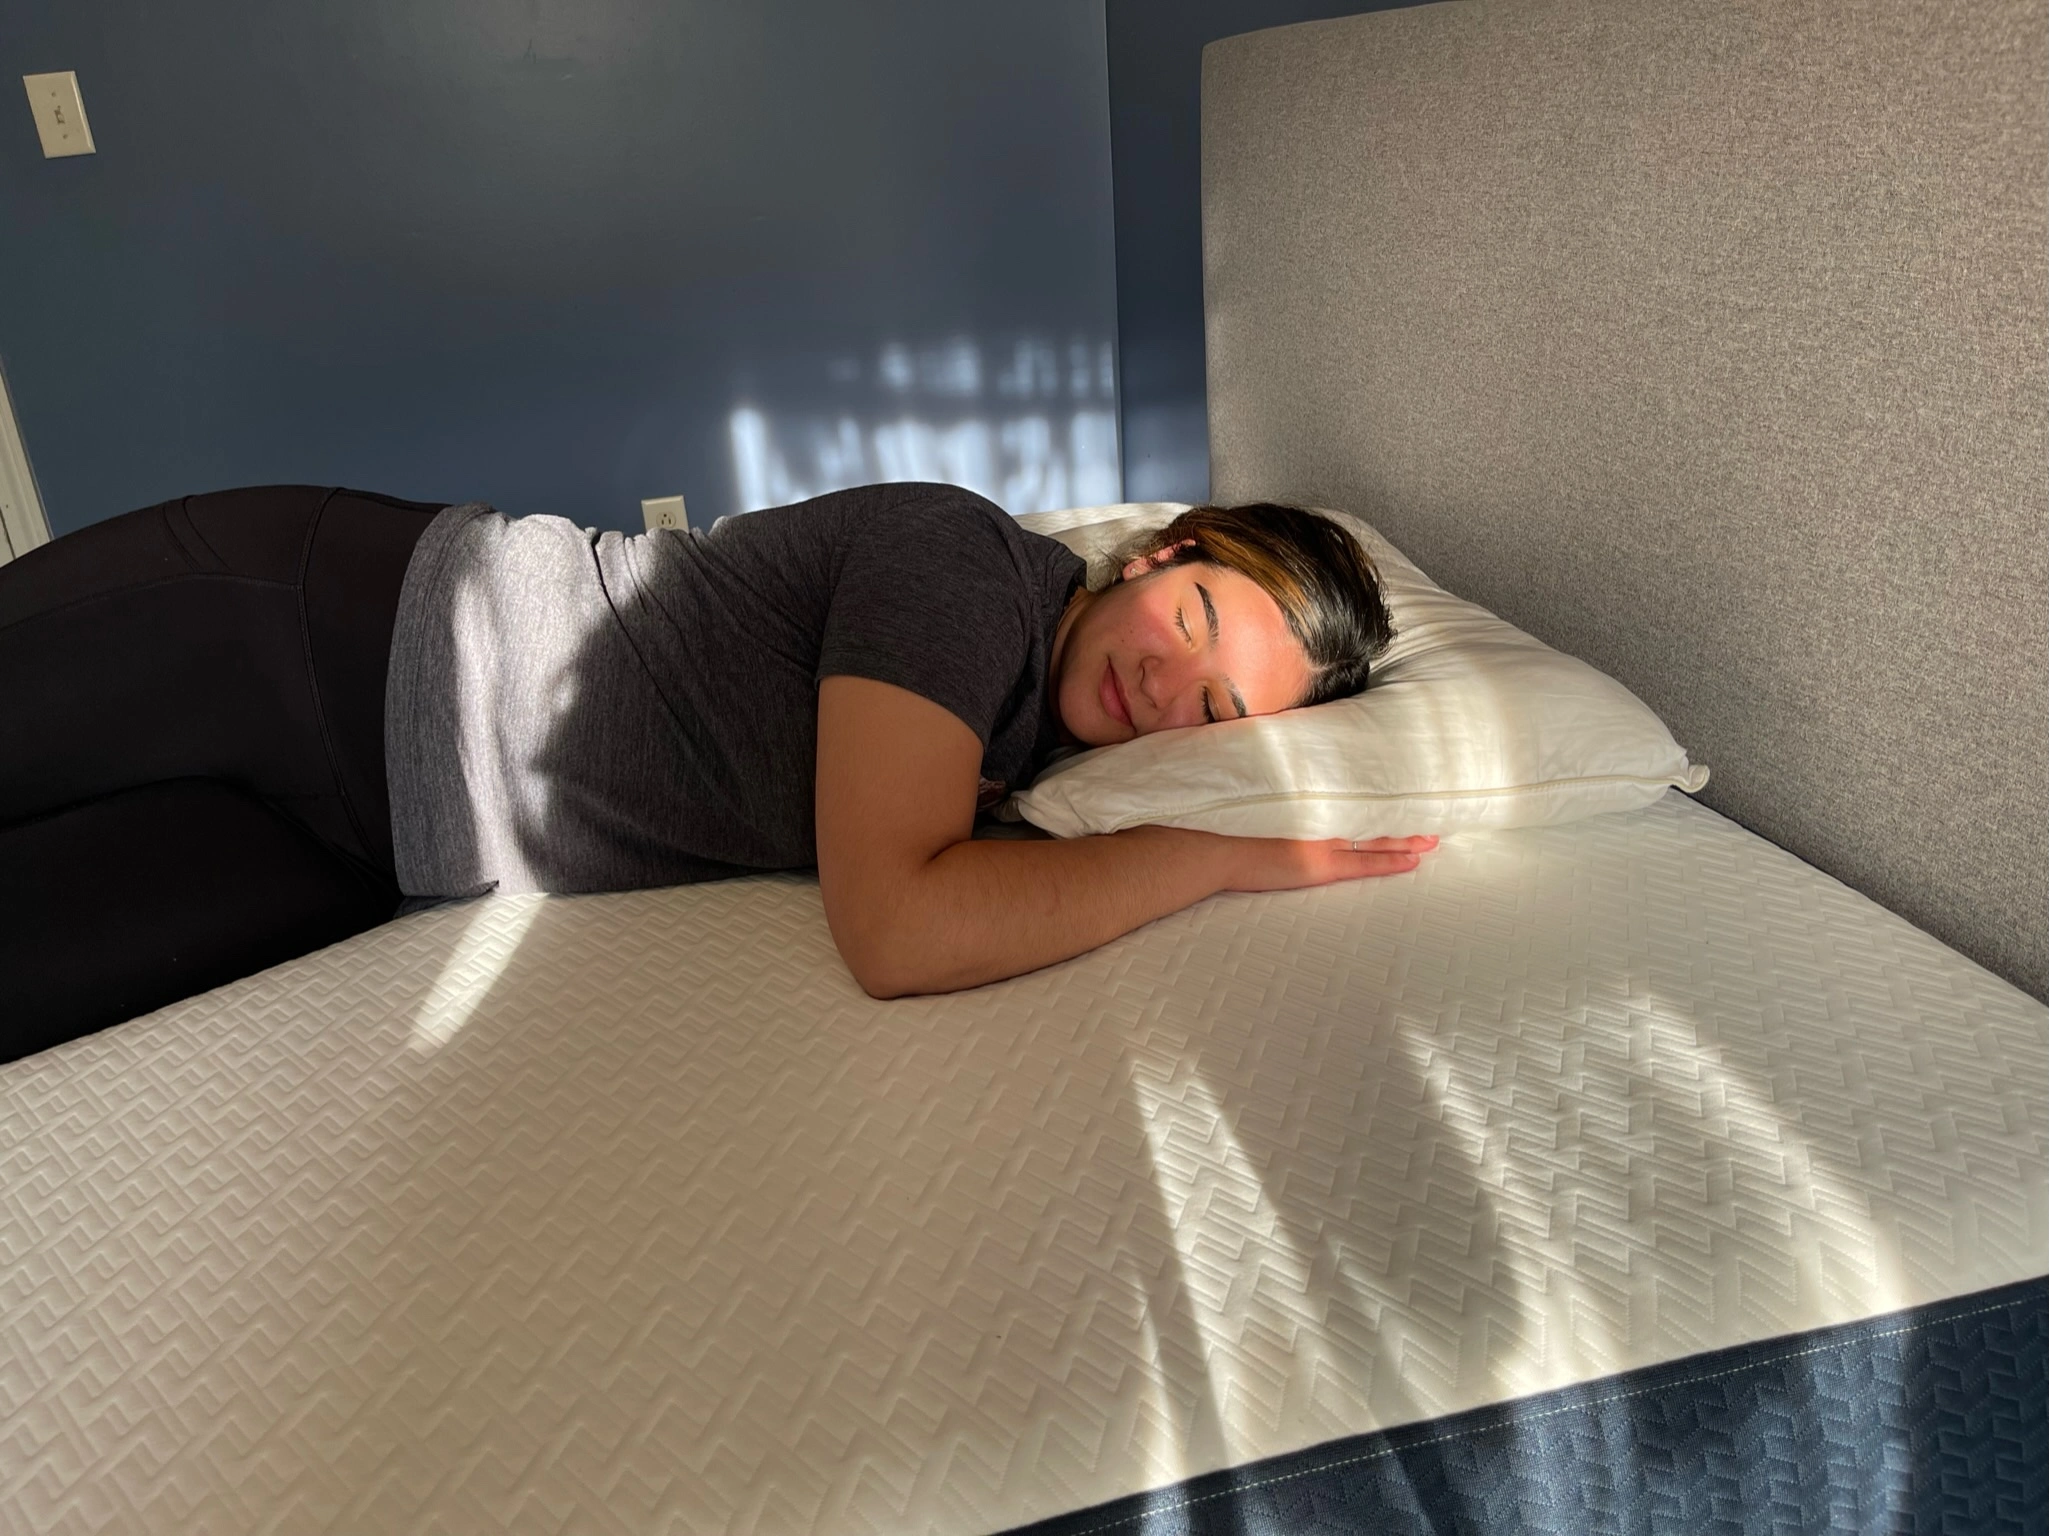 Sleepiverse reviewer testing the BedInABox Original Mattress comfort